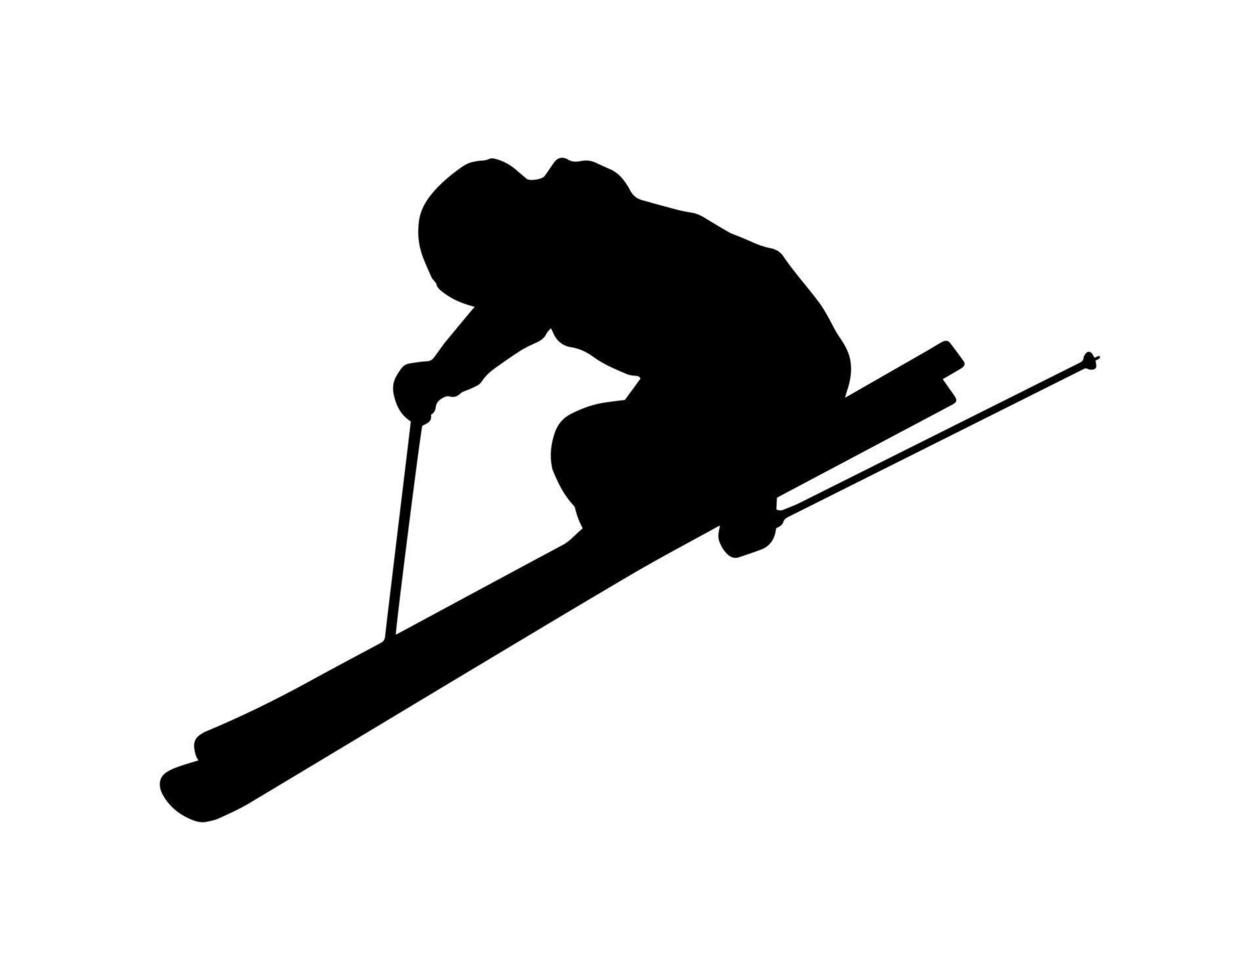 forma de sombra de silueta de persona de esquí simple vectorial, icono negro plano aislado en el fondo blanco. elemento de diseño del emblema del logotipo. juego de deportes de invierno y actividad de ocio. vector